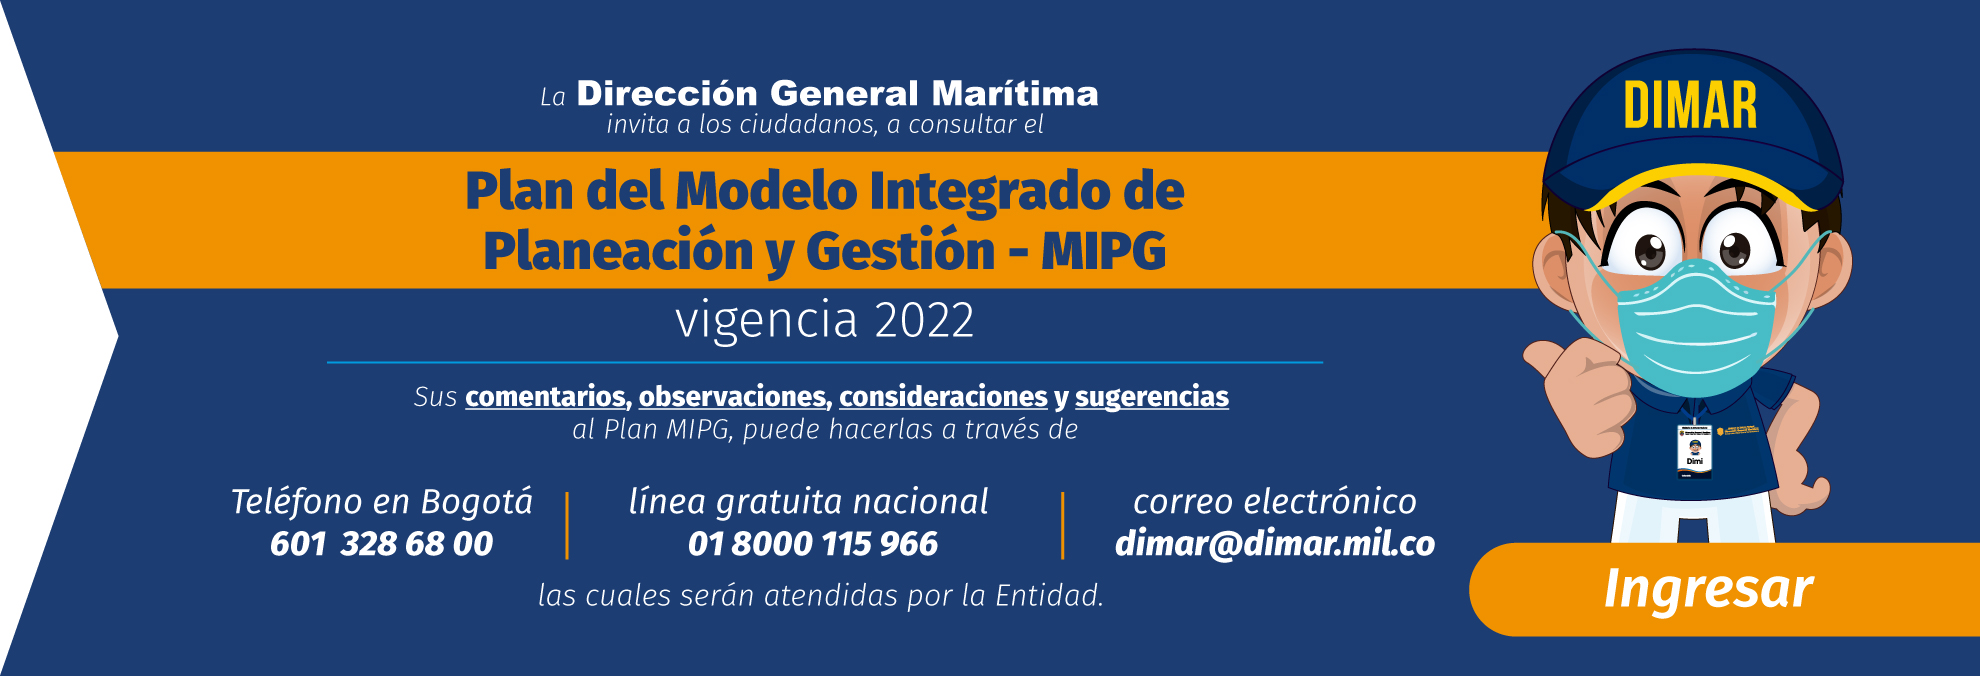 banner_Publicaci%C3%B3n-plan-del-MIPG-2022